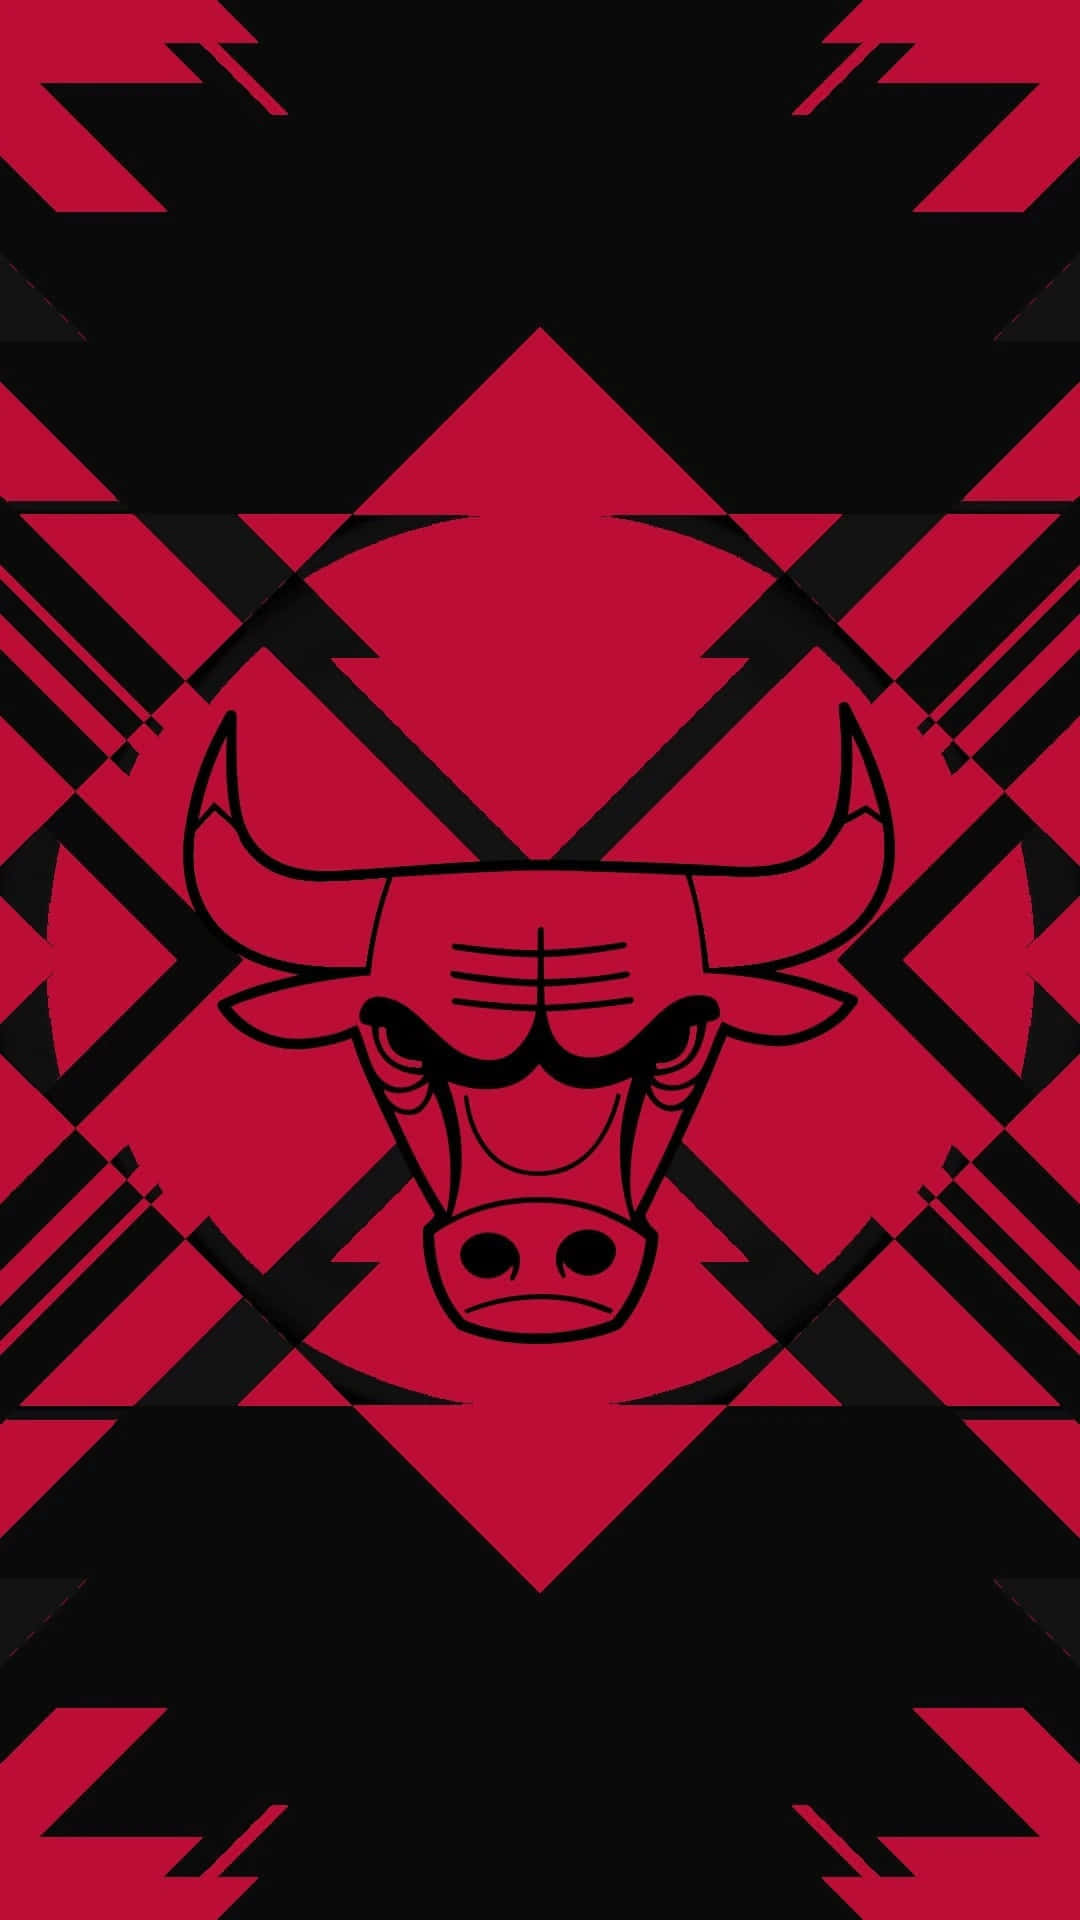 Chicago Bulls For The Win Wallpaper